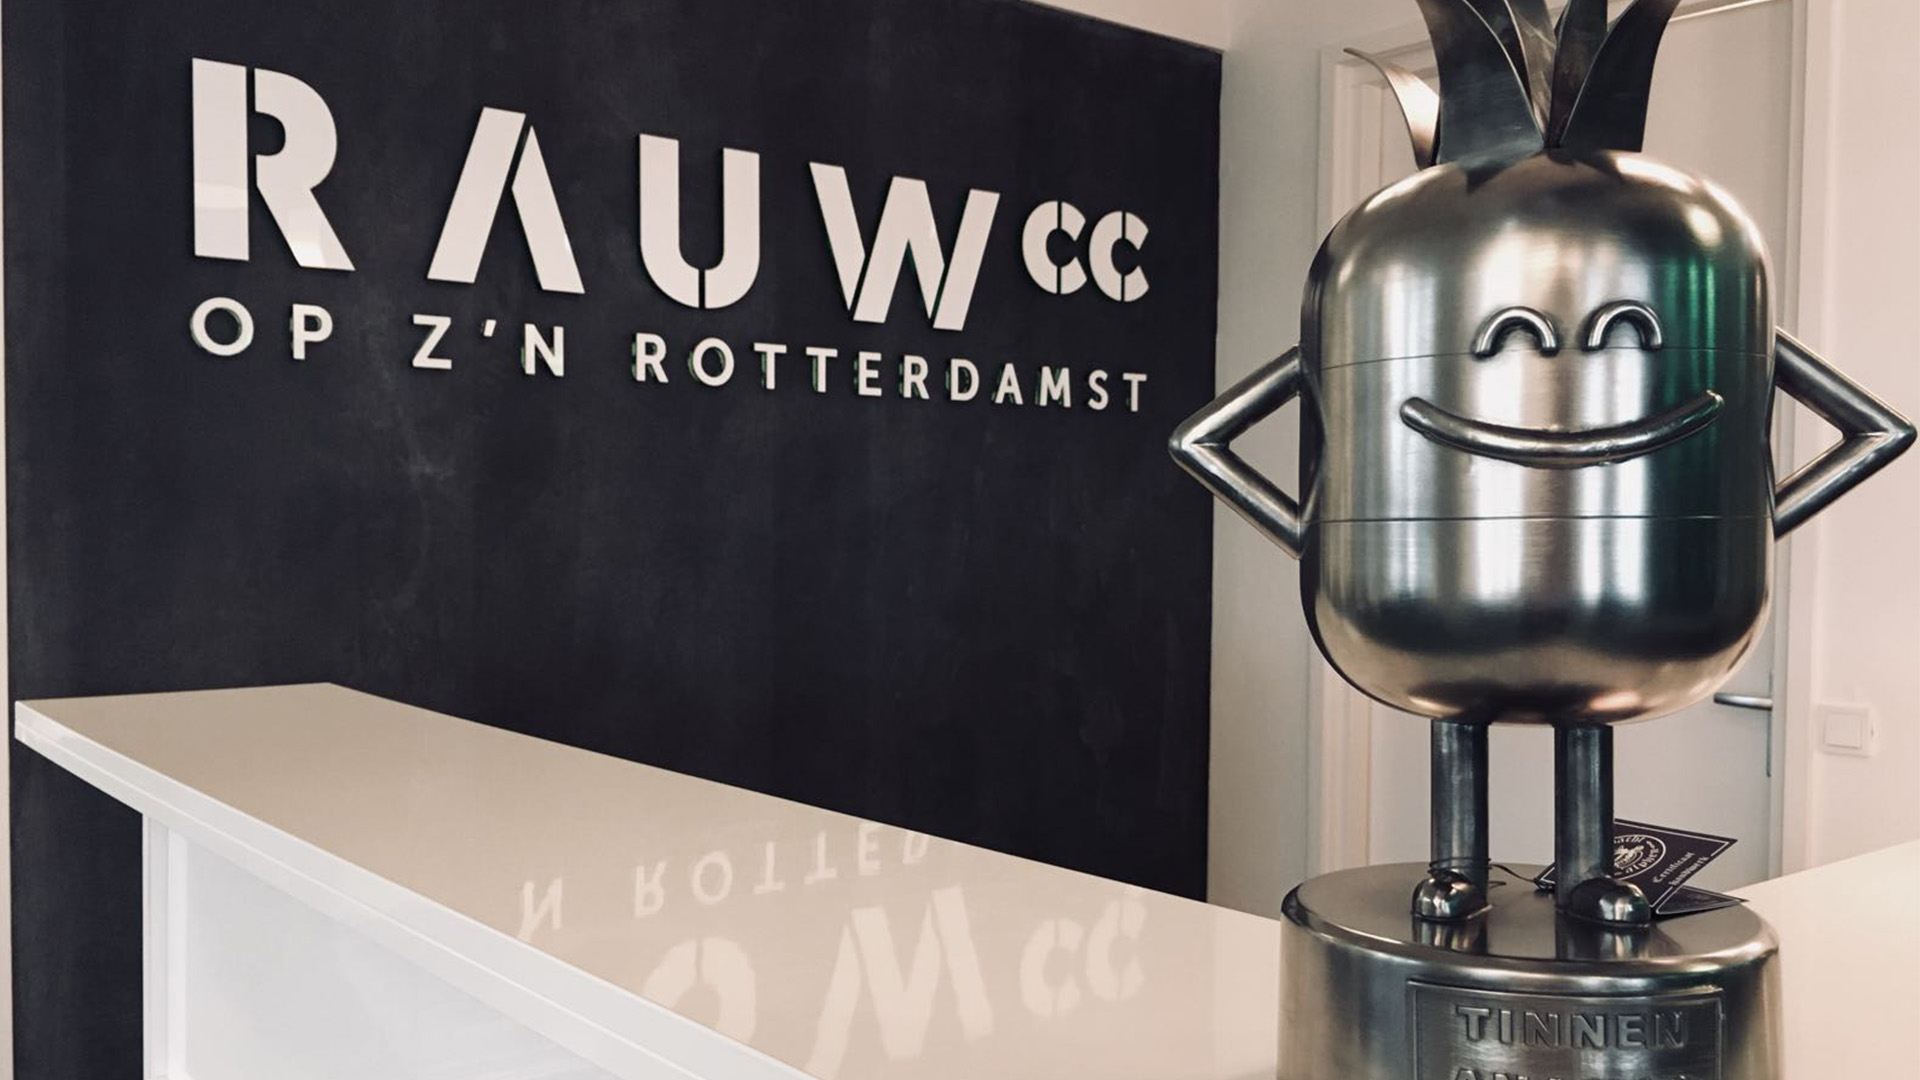 De Tinen Ananas award bij RAUWcc op kantoor, op de achtergrond het RAUWcc logo